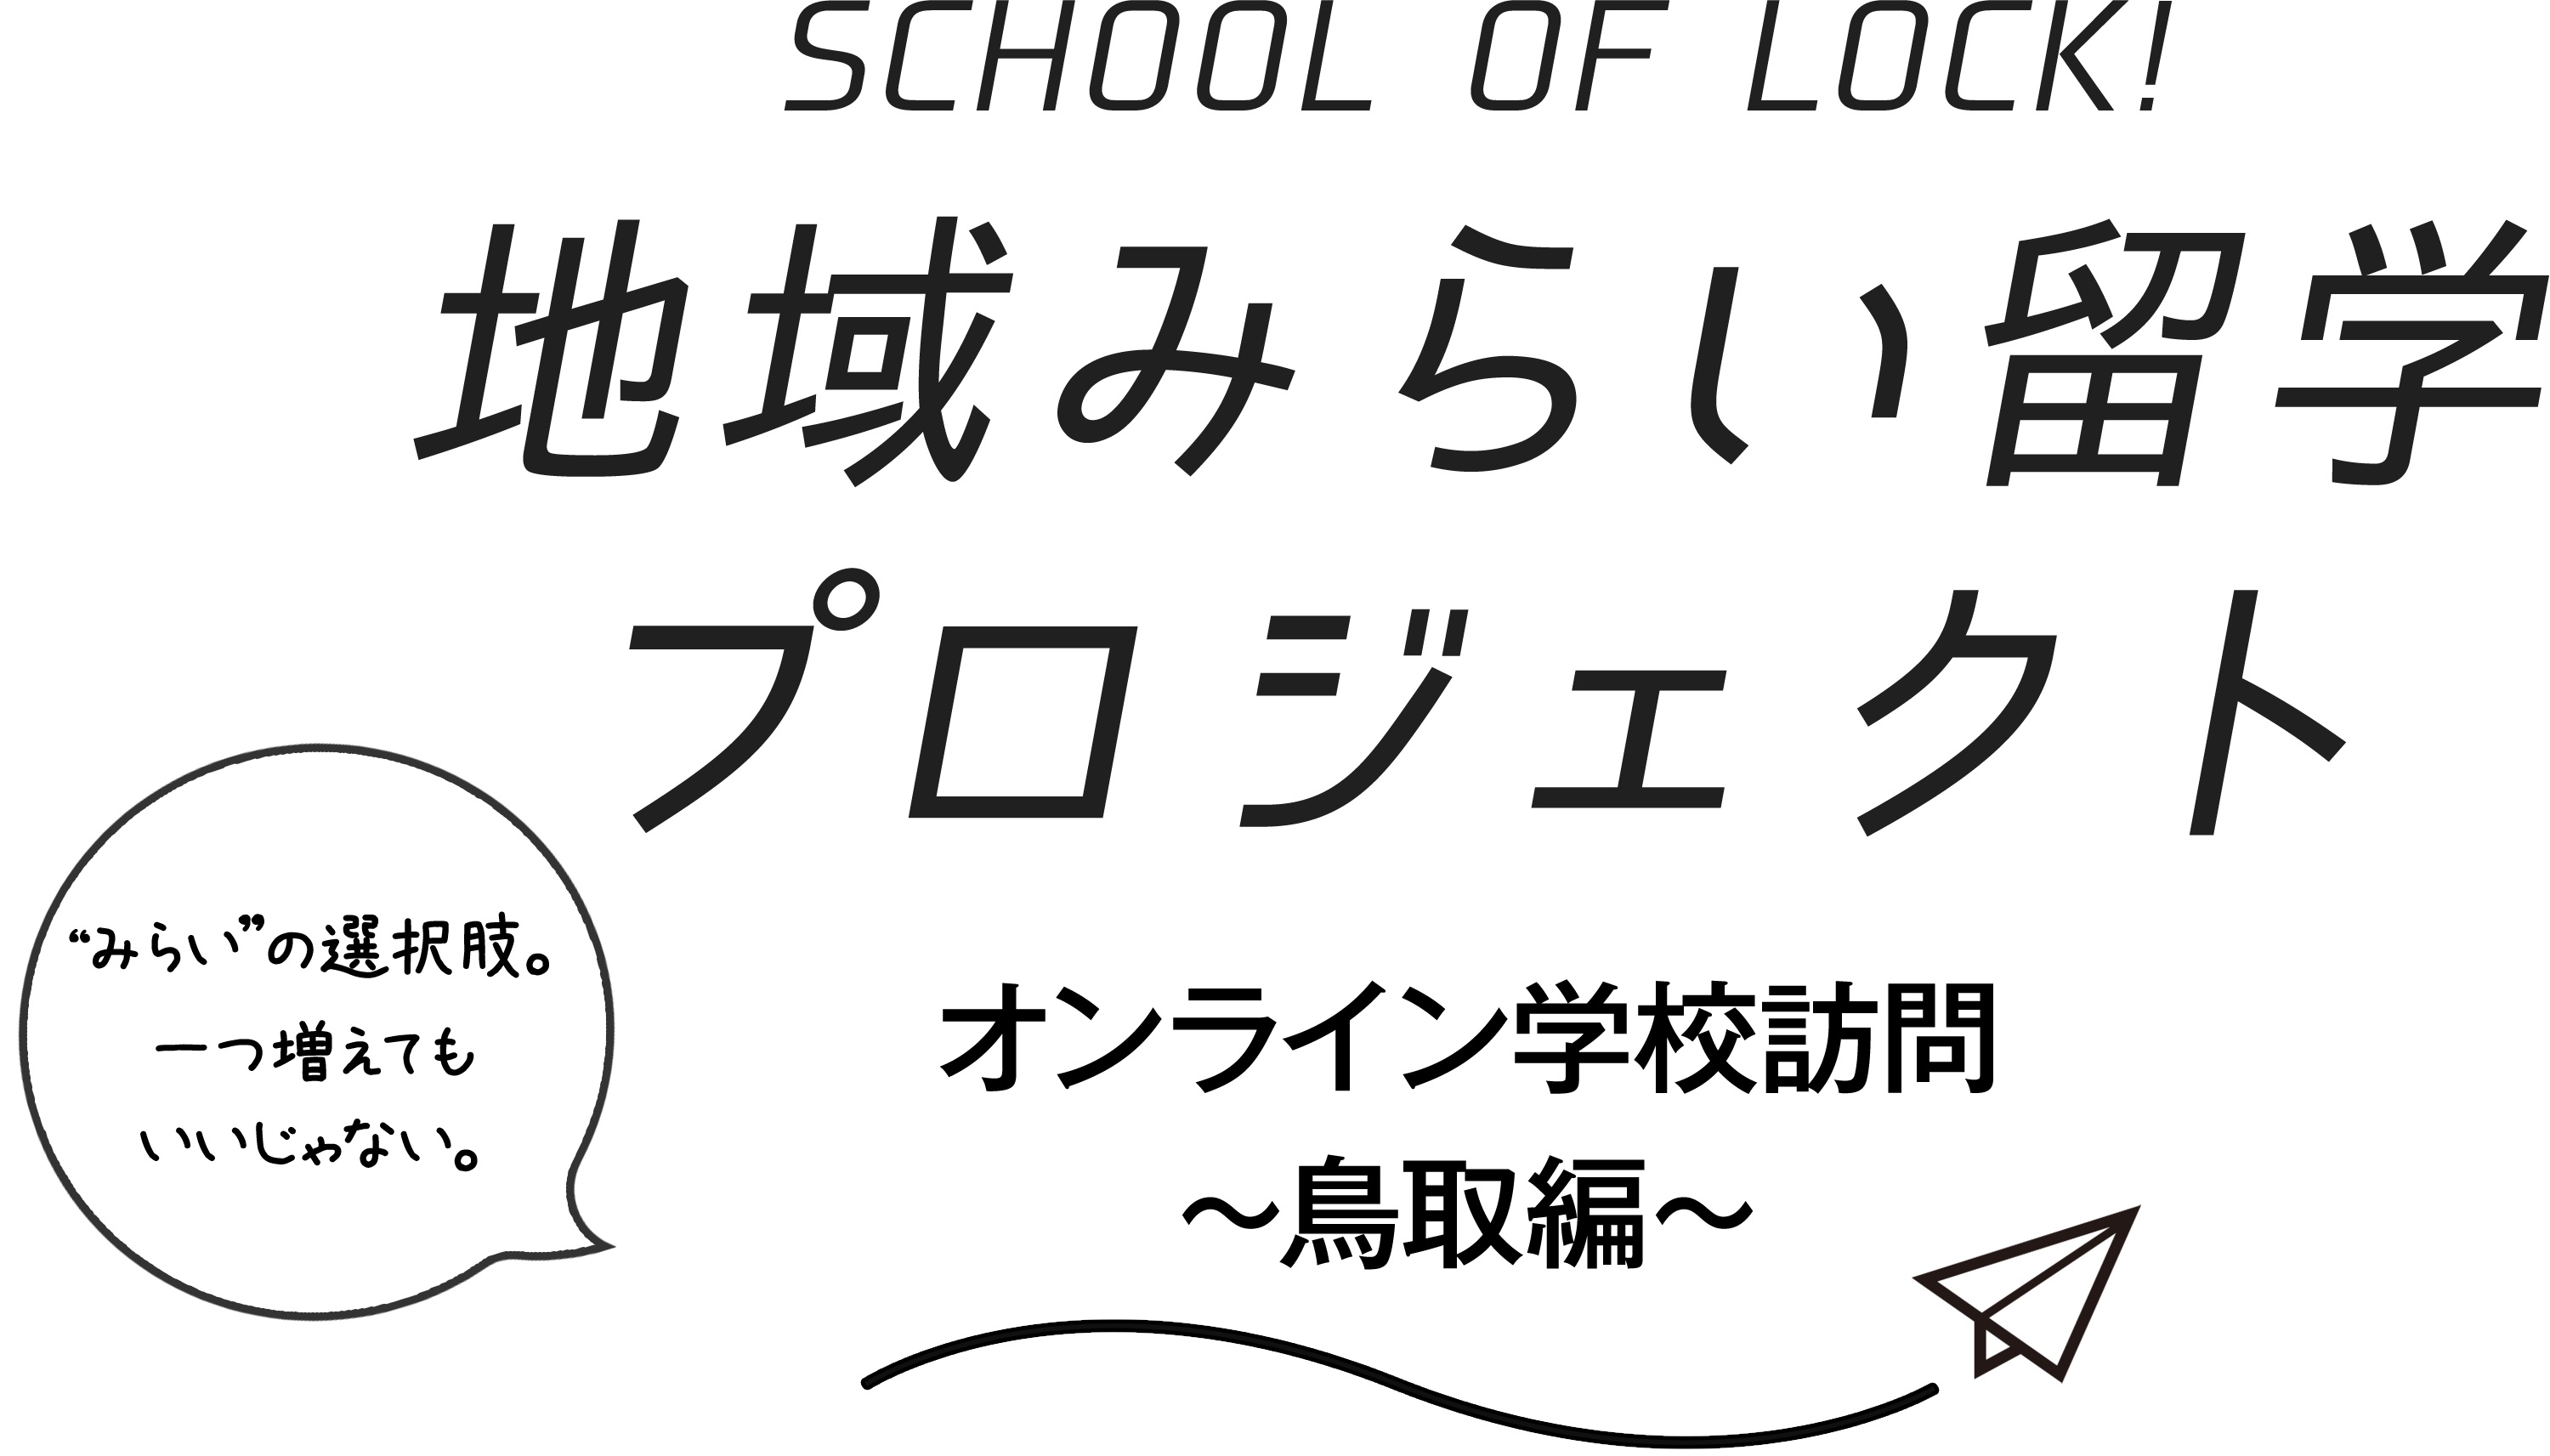 School Of Lock 鳥取県地域みらい留学プロジェクト オンライン学校訪問 鳥取編 Tokyo Fmのプレスリリース